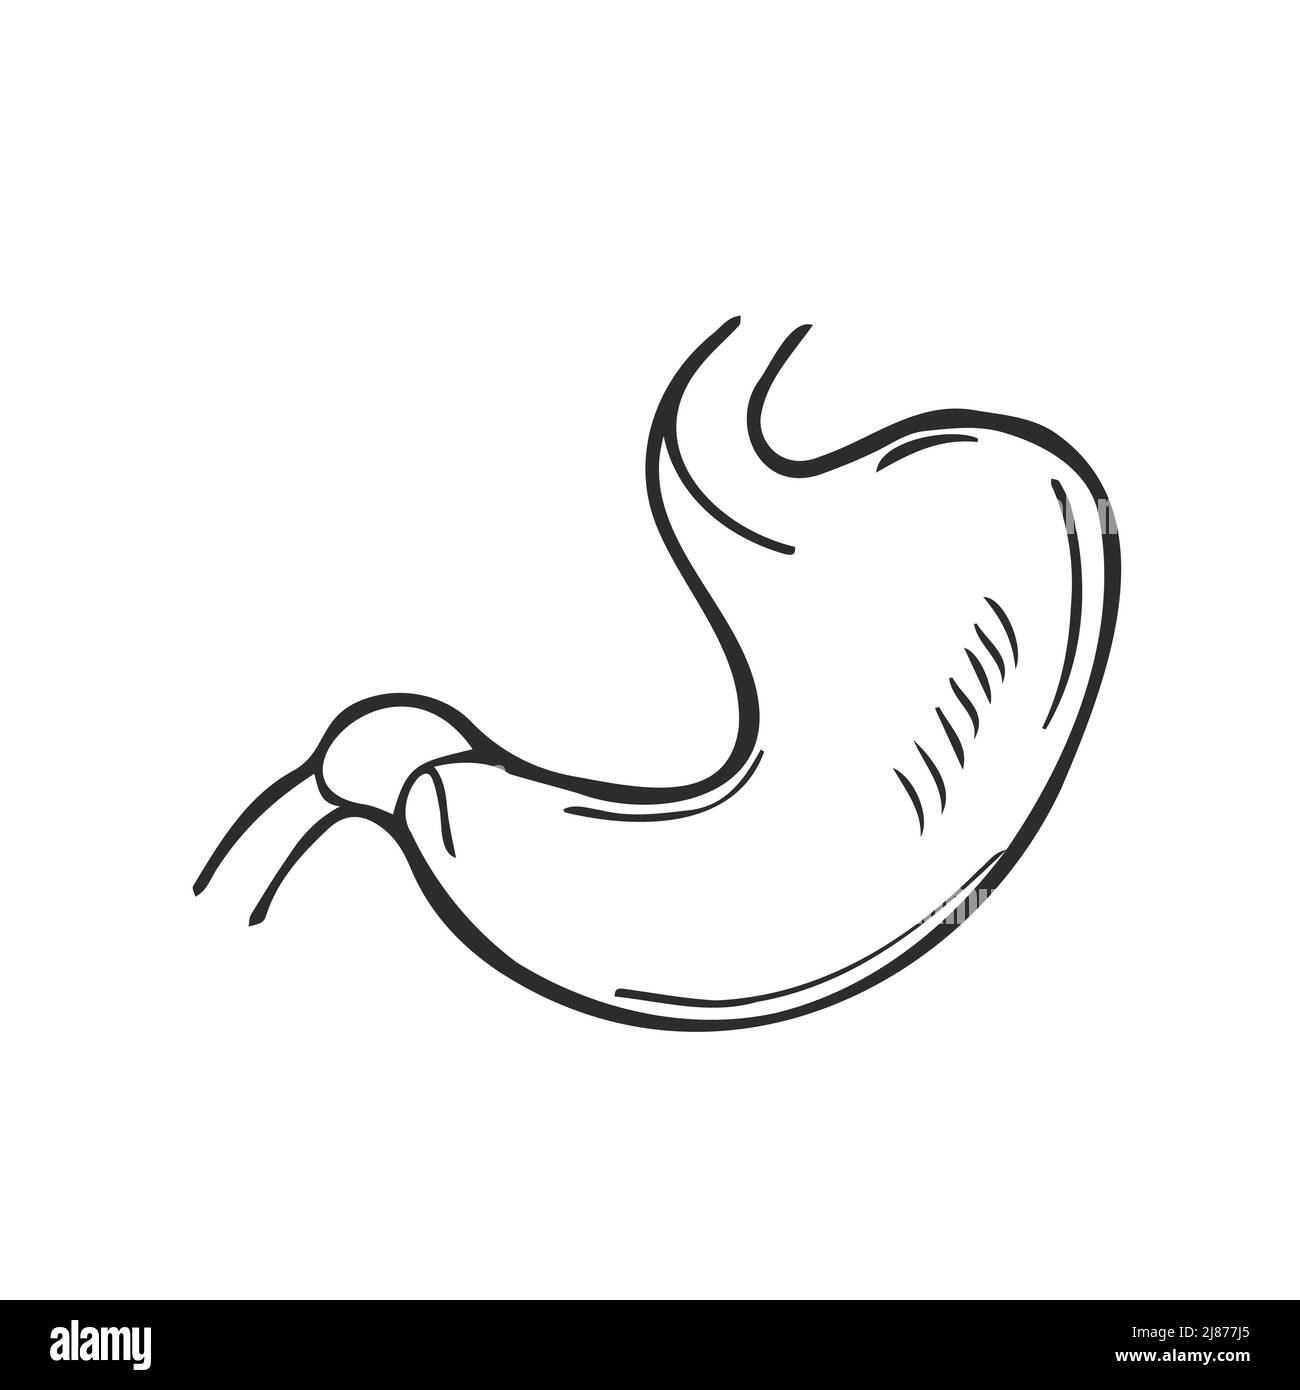 Doodle digestione stomaco disegnata a mano contorno icona. Illustrazione dello schizzo vettoriale del concetto del tratto digestivo e del sistema enzimatico Illustrazione Vettoriale